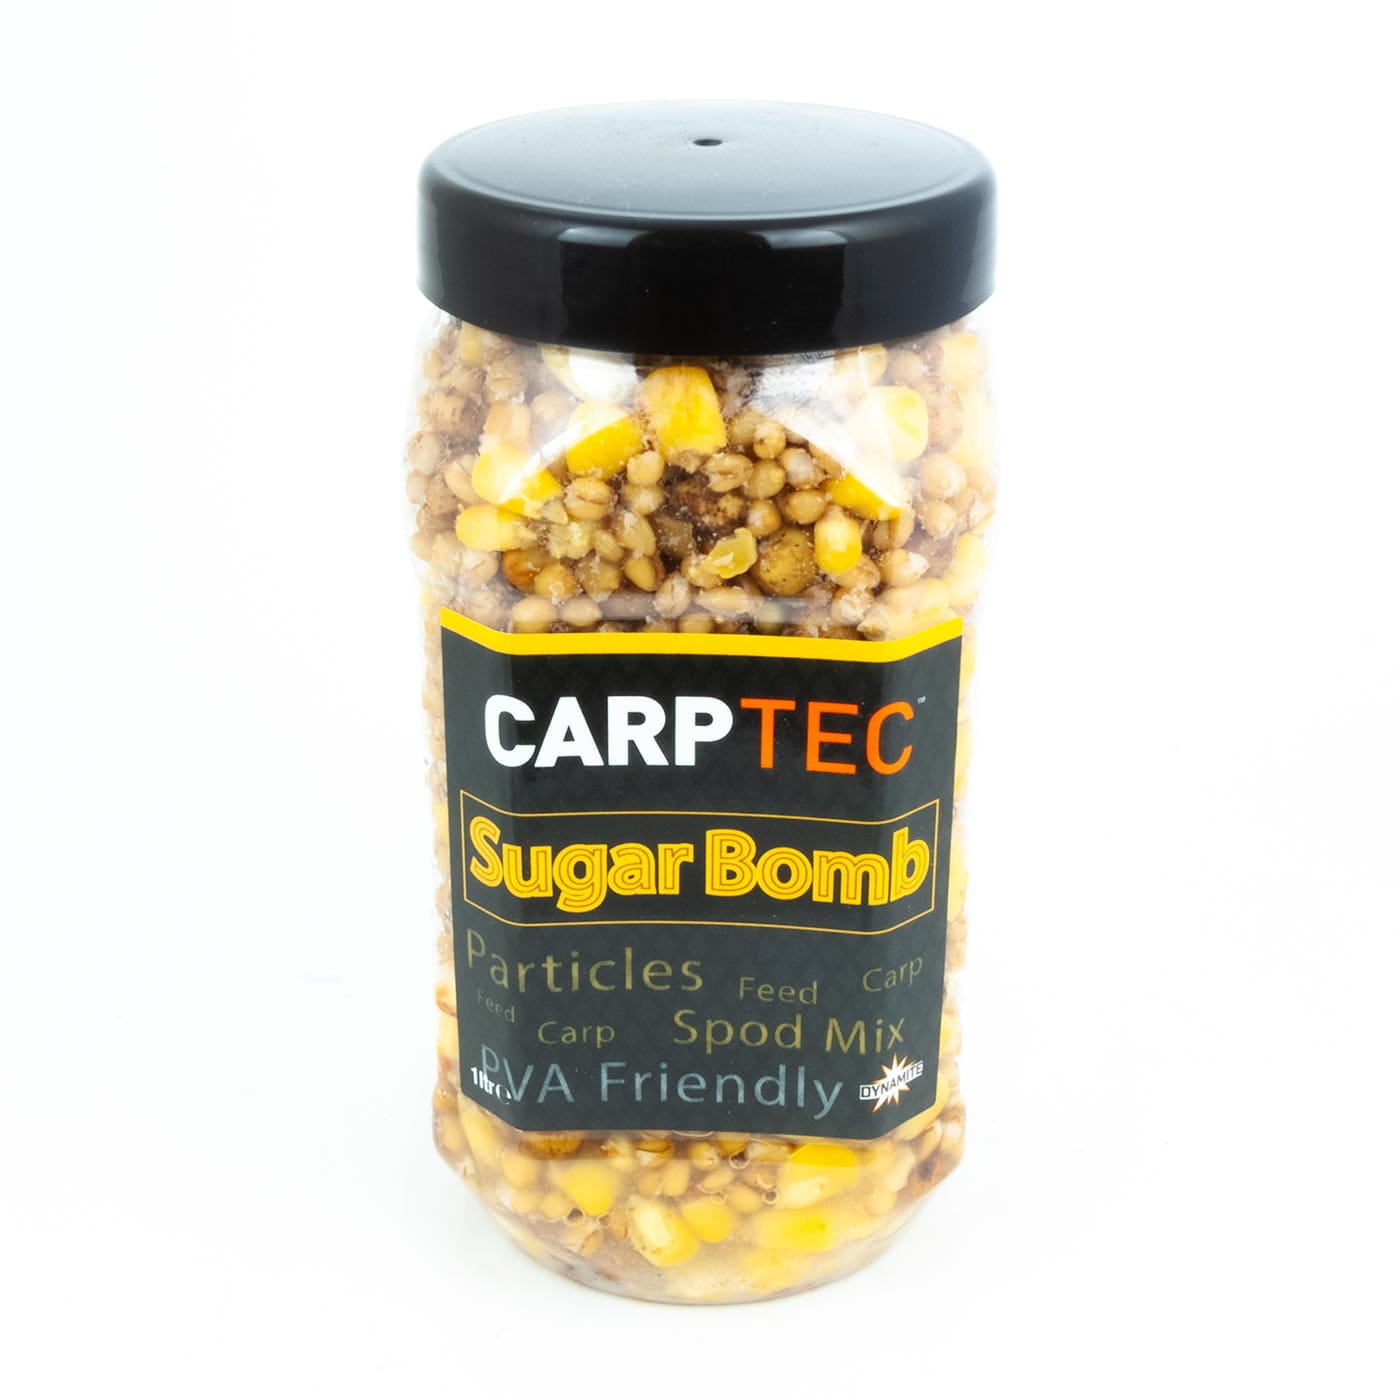 Carptec Particles - Sugar Bomb